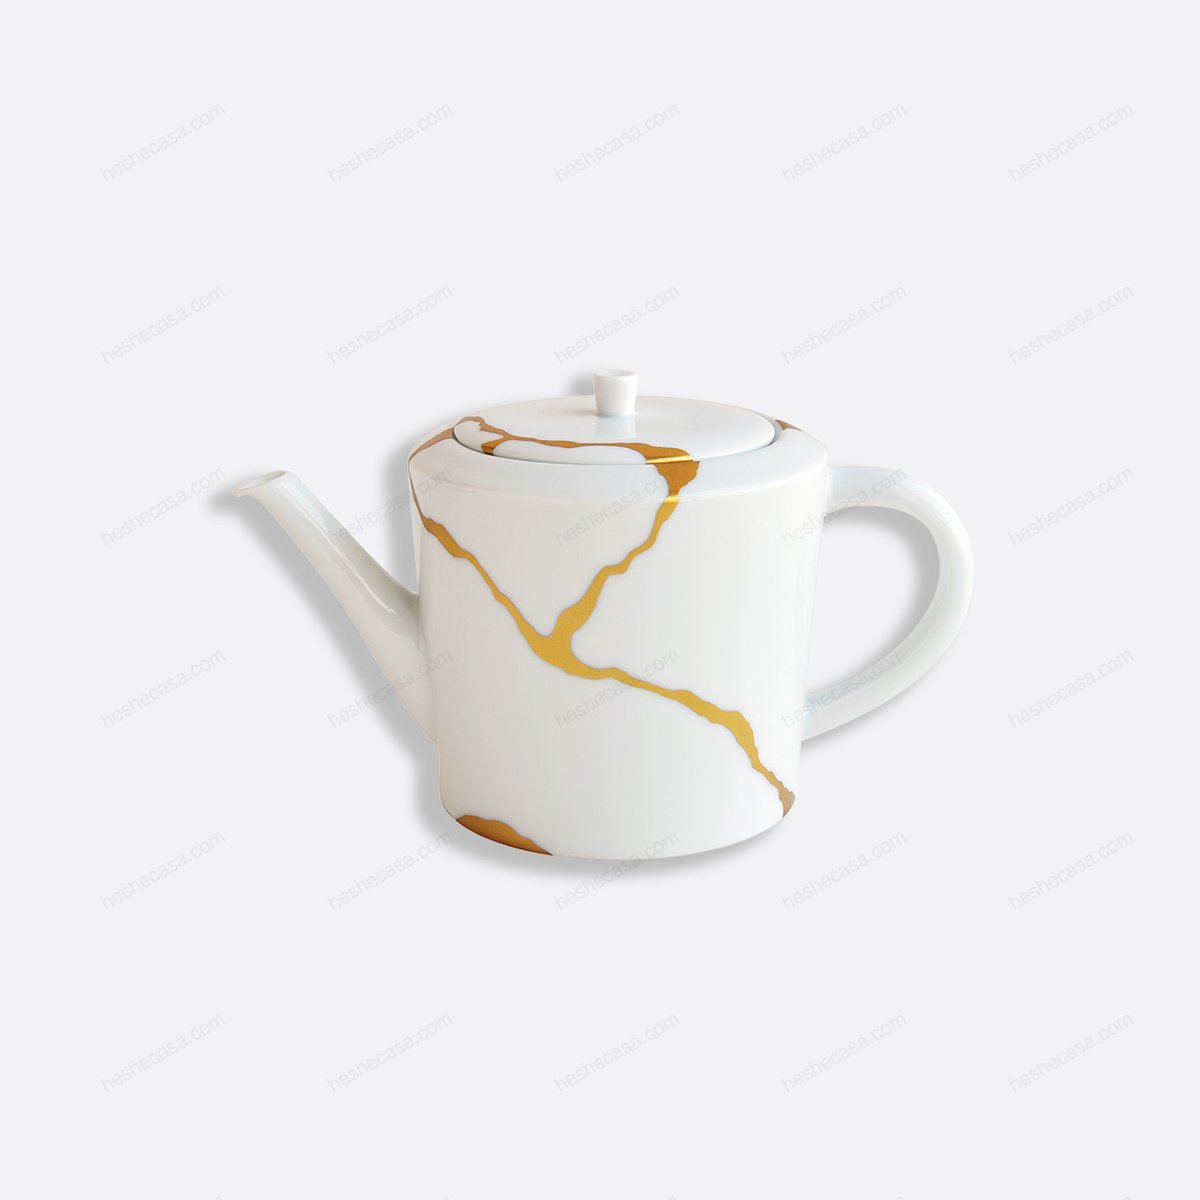 Kintsugi Teapot 2 Cups 17 Oz 茶壶